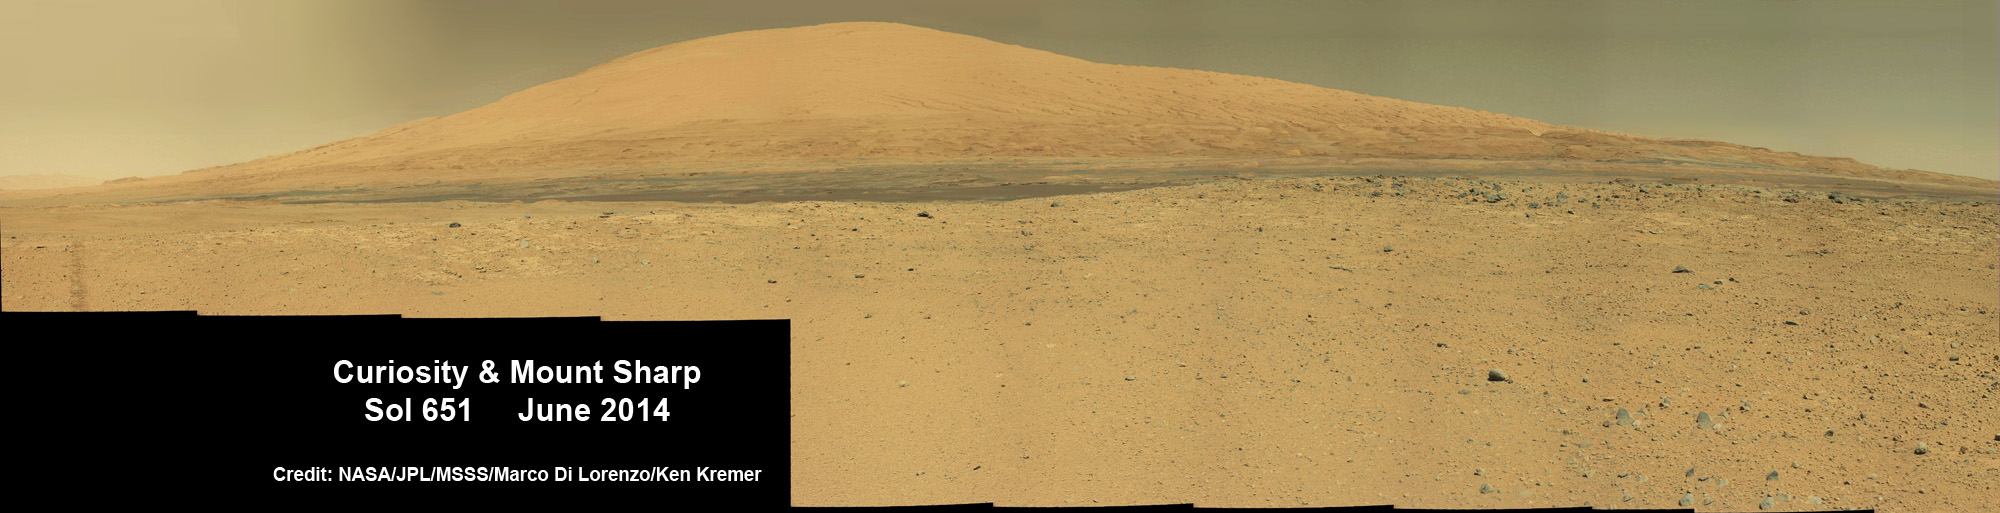 Очередное достижение Curiosity: выход из области посадочного эллипса